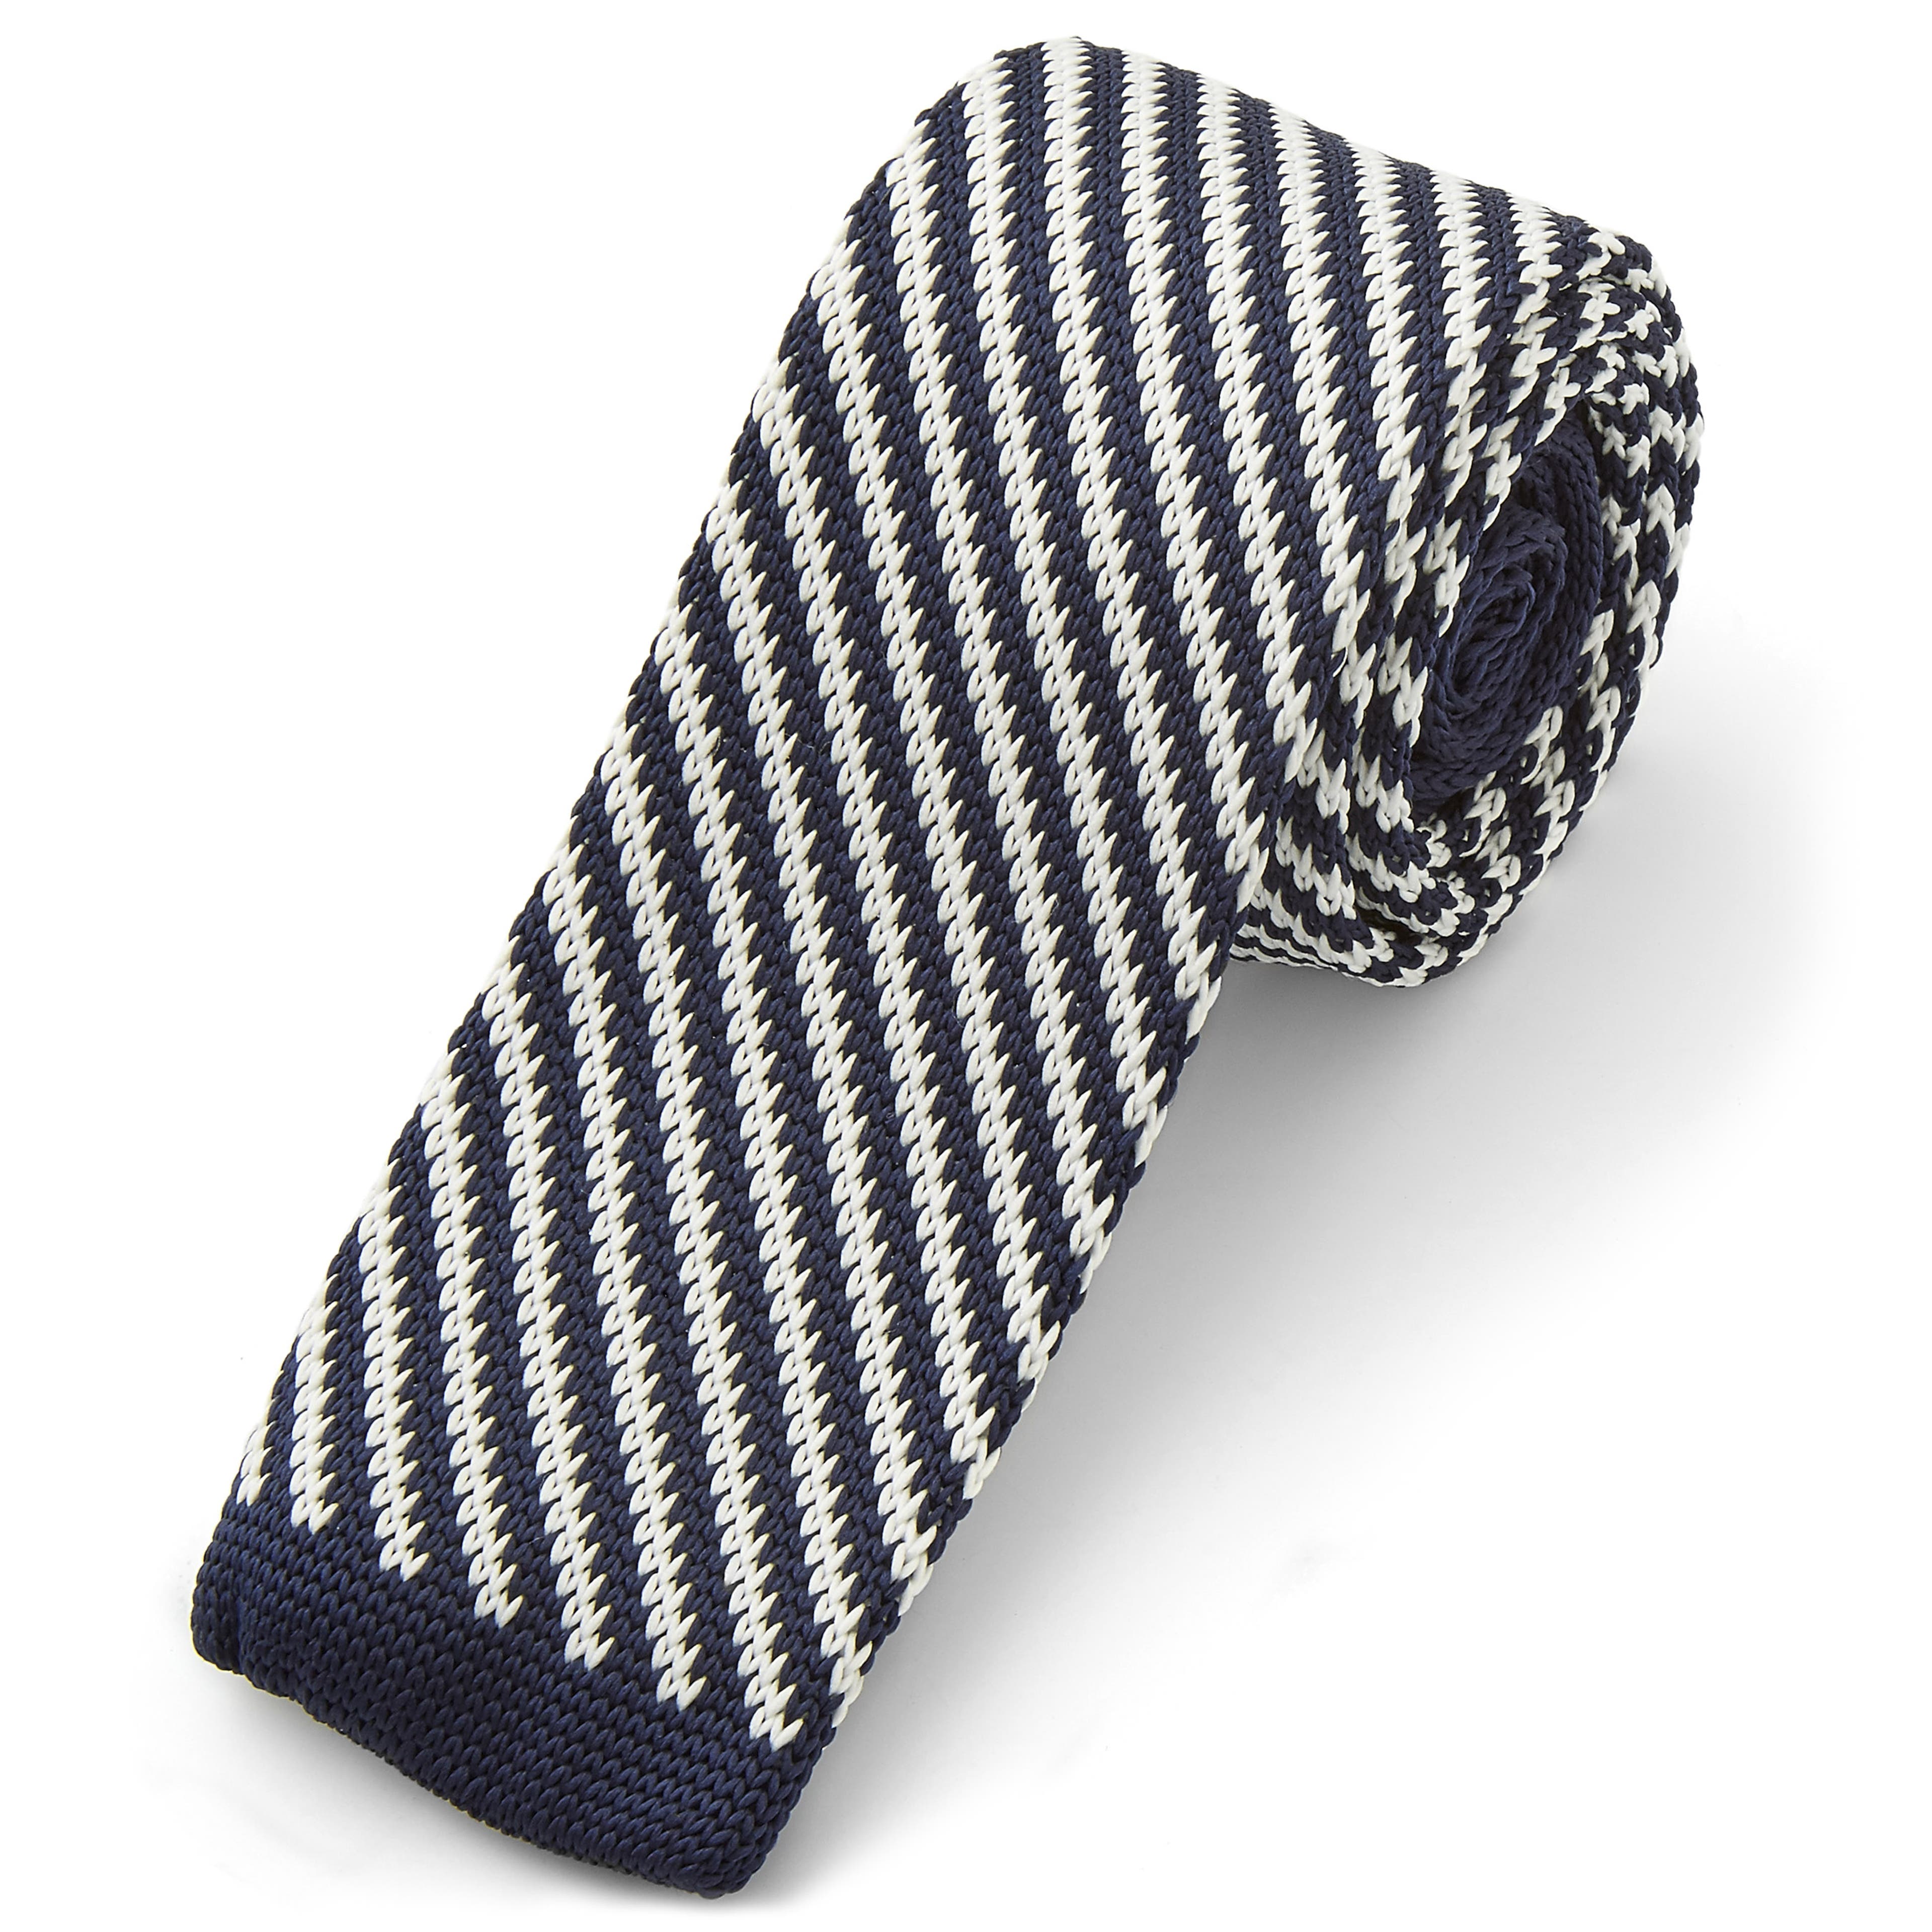 Pletená kravata s modro-bílými diagonálními proužky